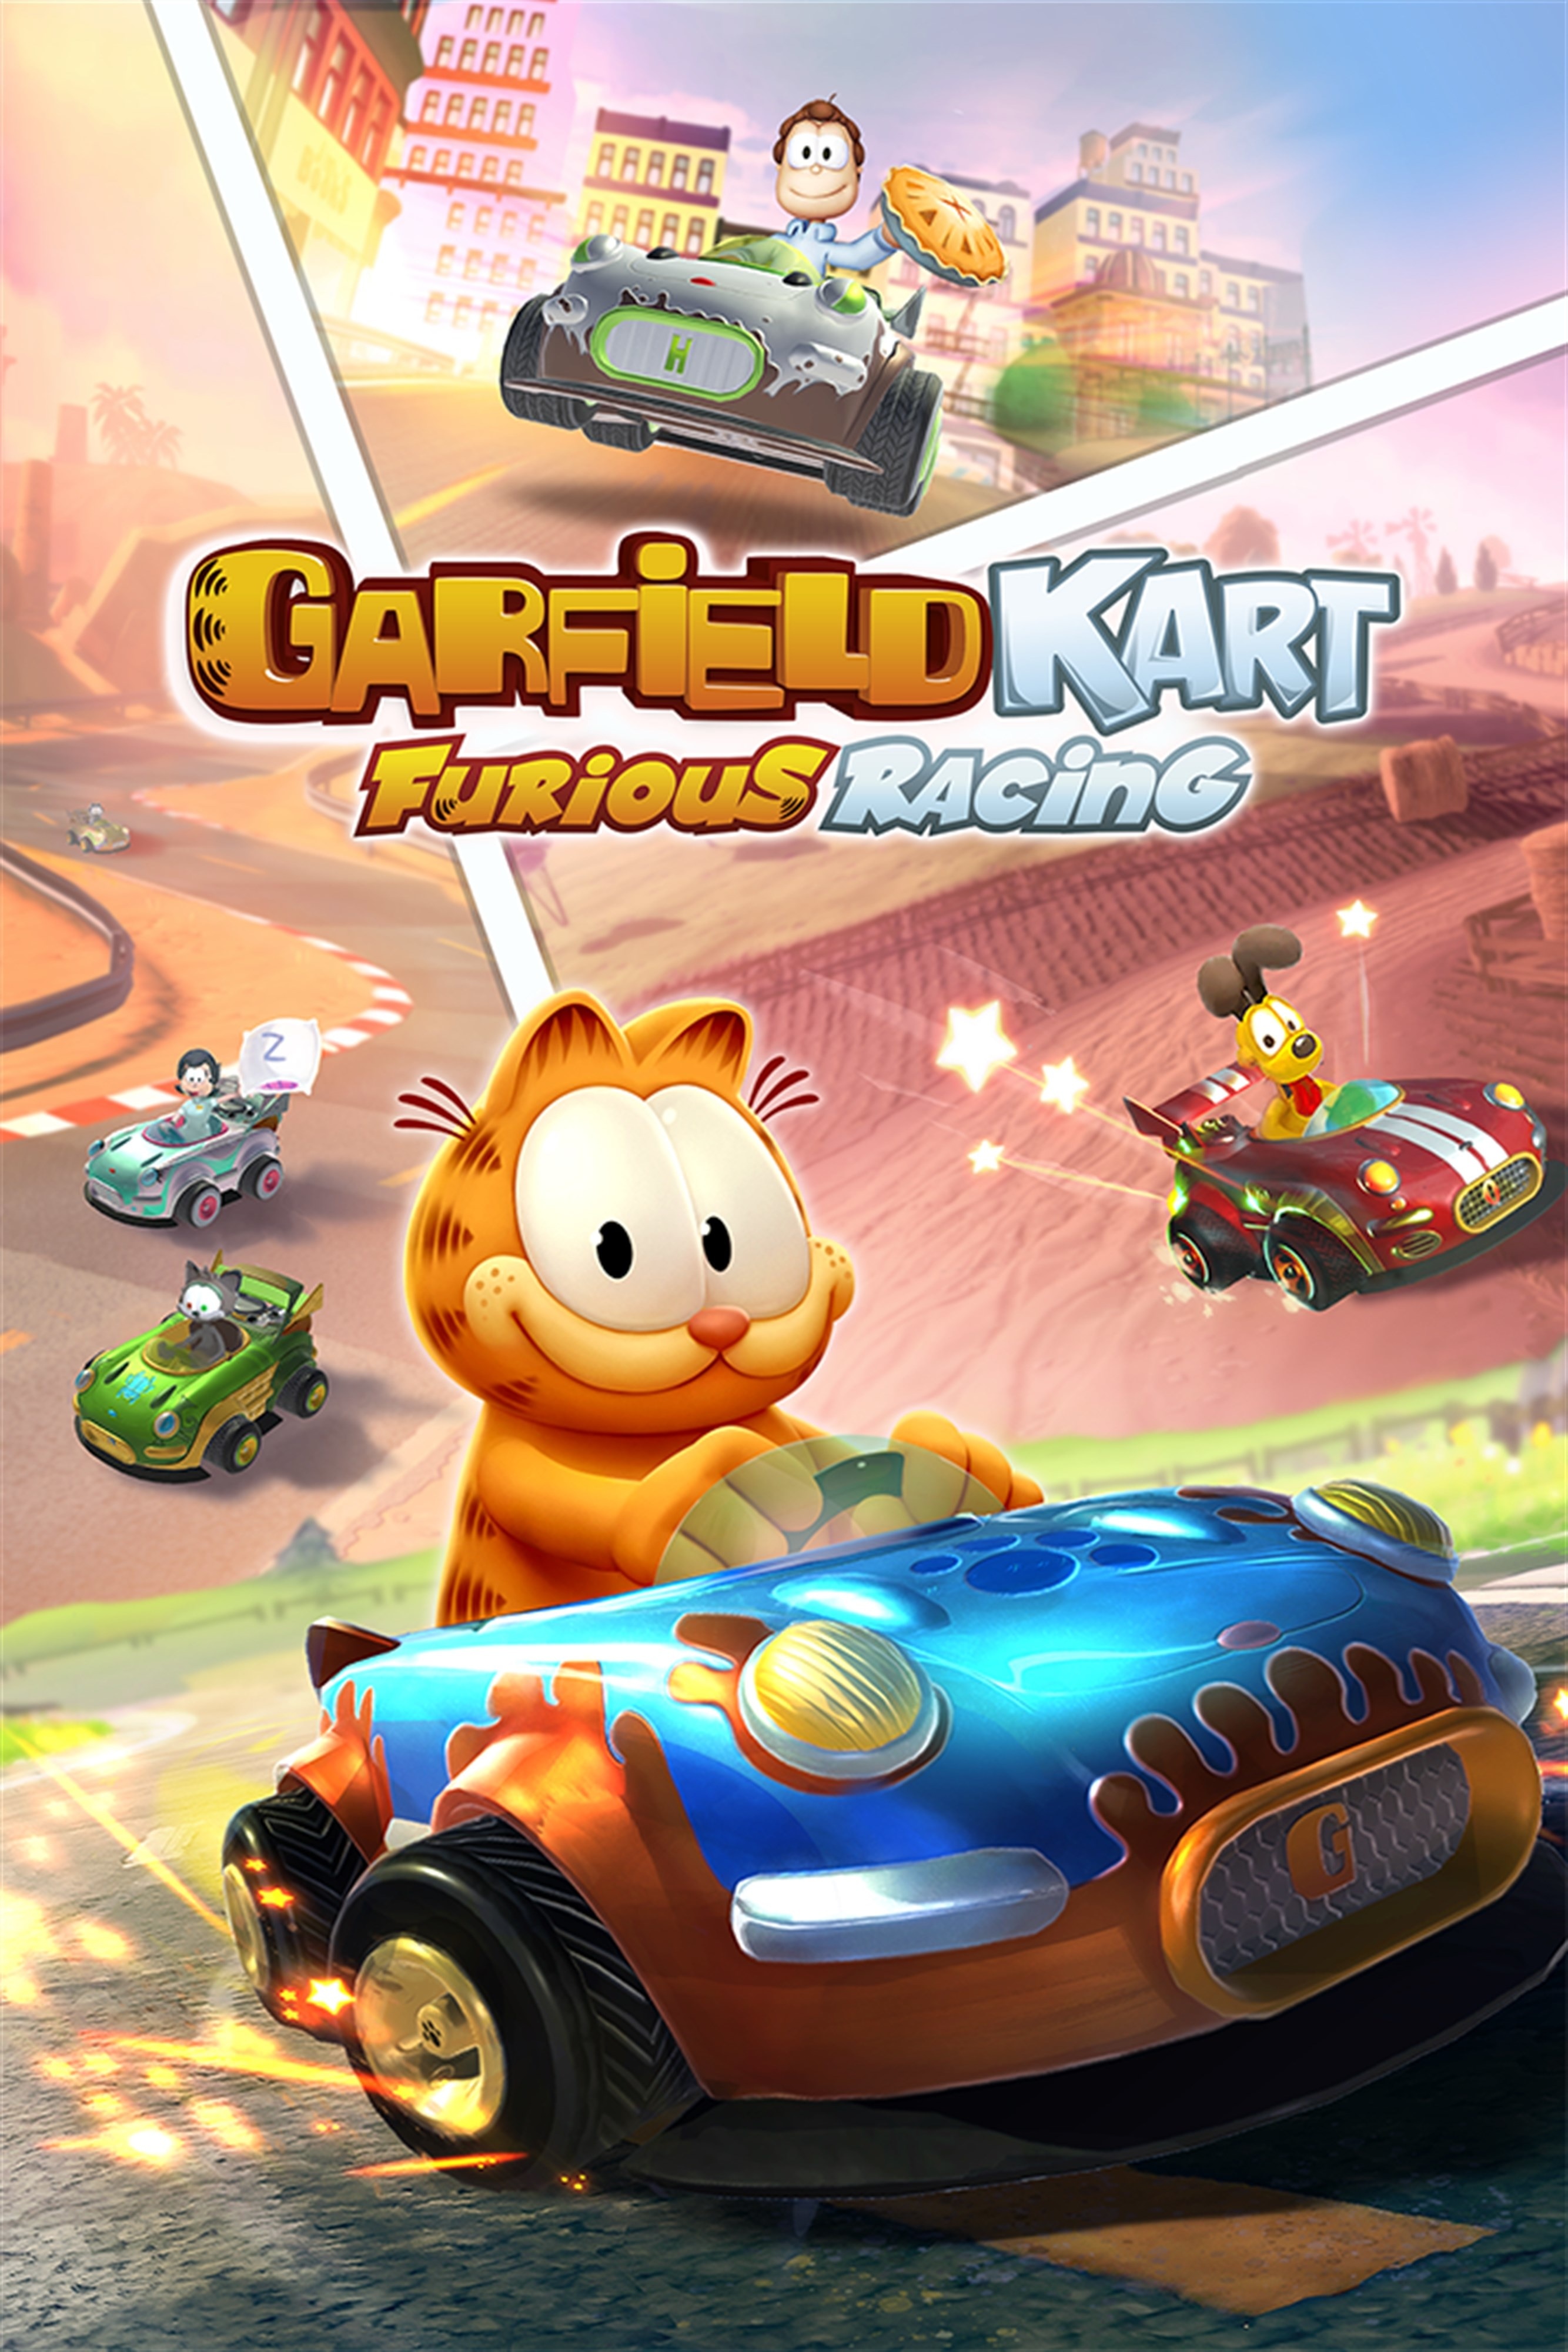 C2C Garfield Kart Furious Racing CH (Xbox) zum Sofortdownload